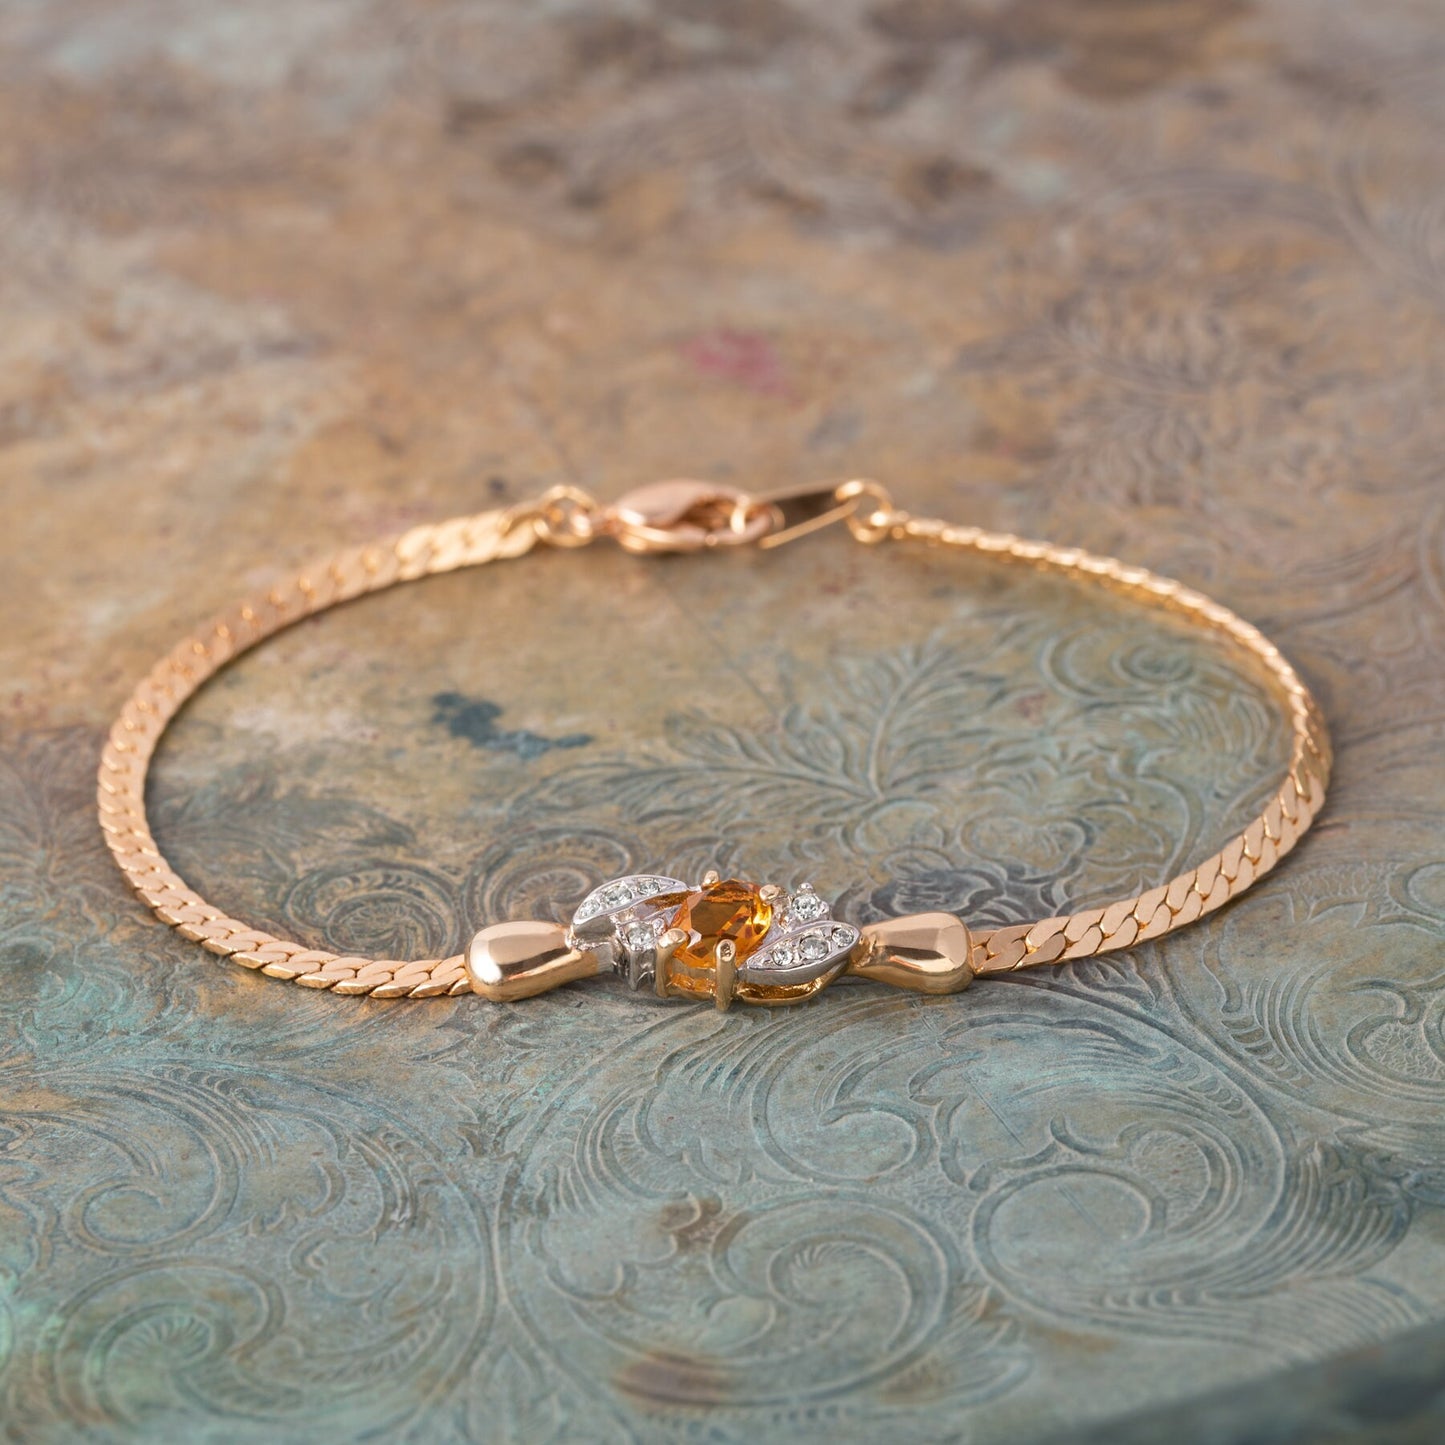 Vintage Ring Bracelet Light Topaz and Clear Swarovski Crystal 18kt Gold Plated Bracelet B1308 Size: undefined